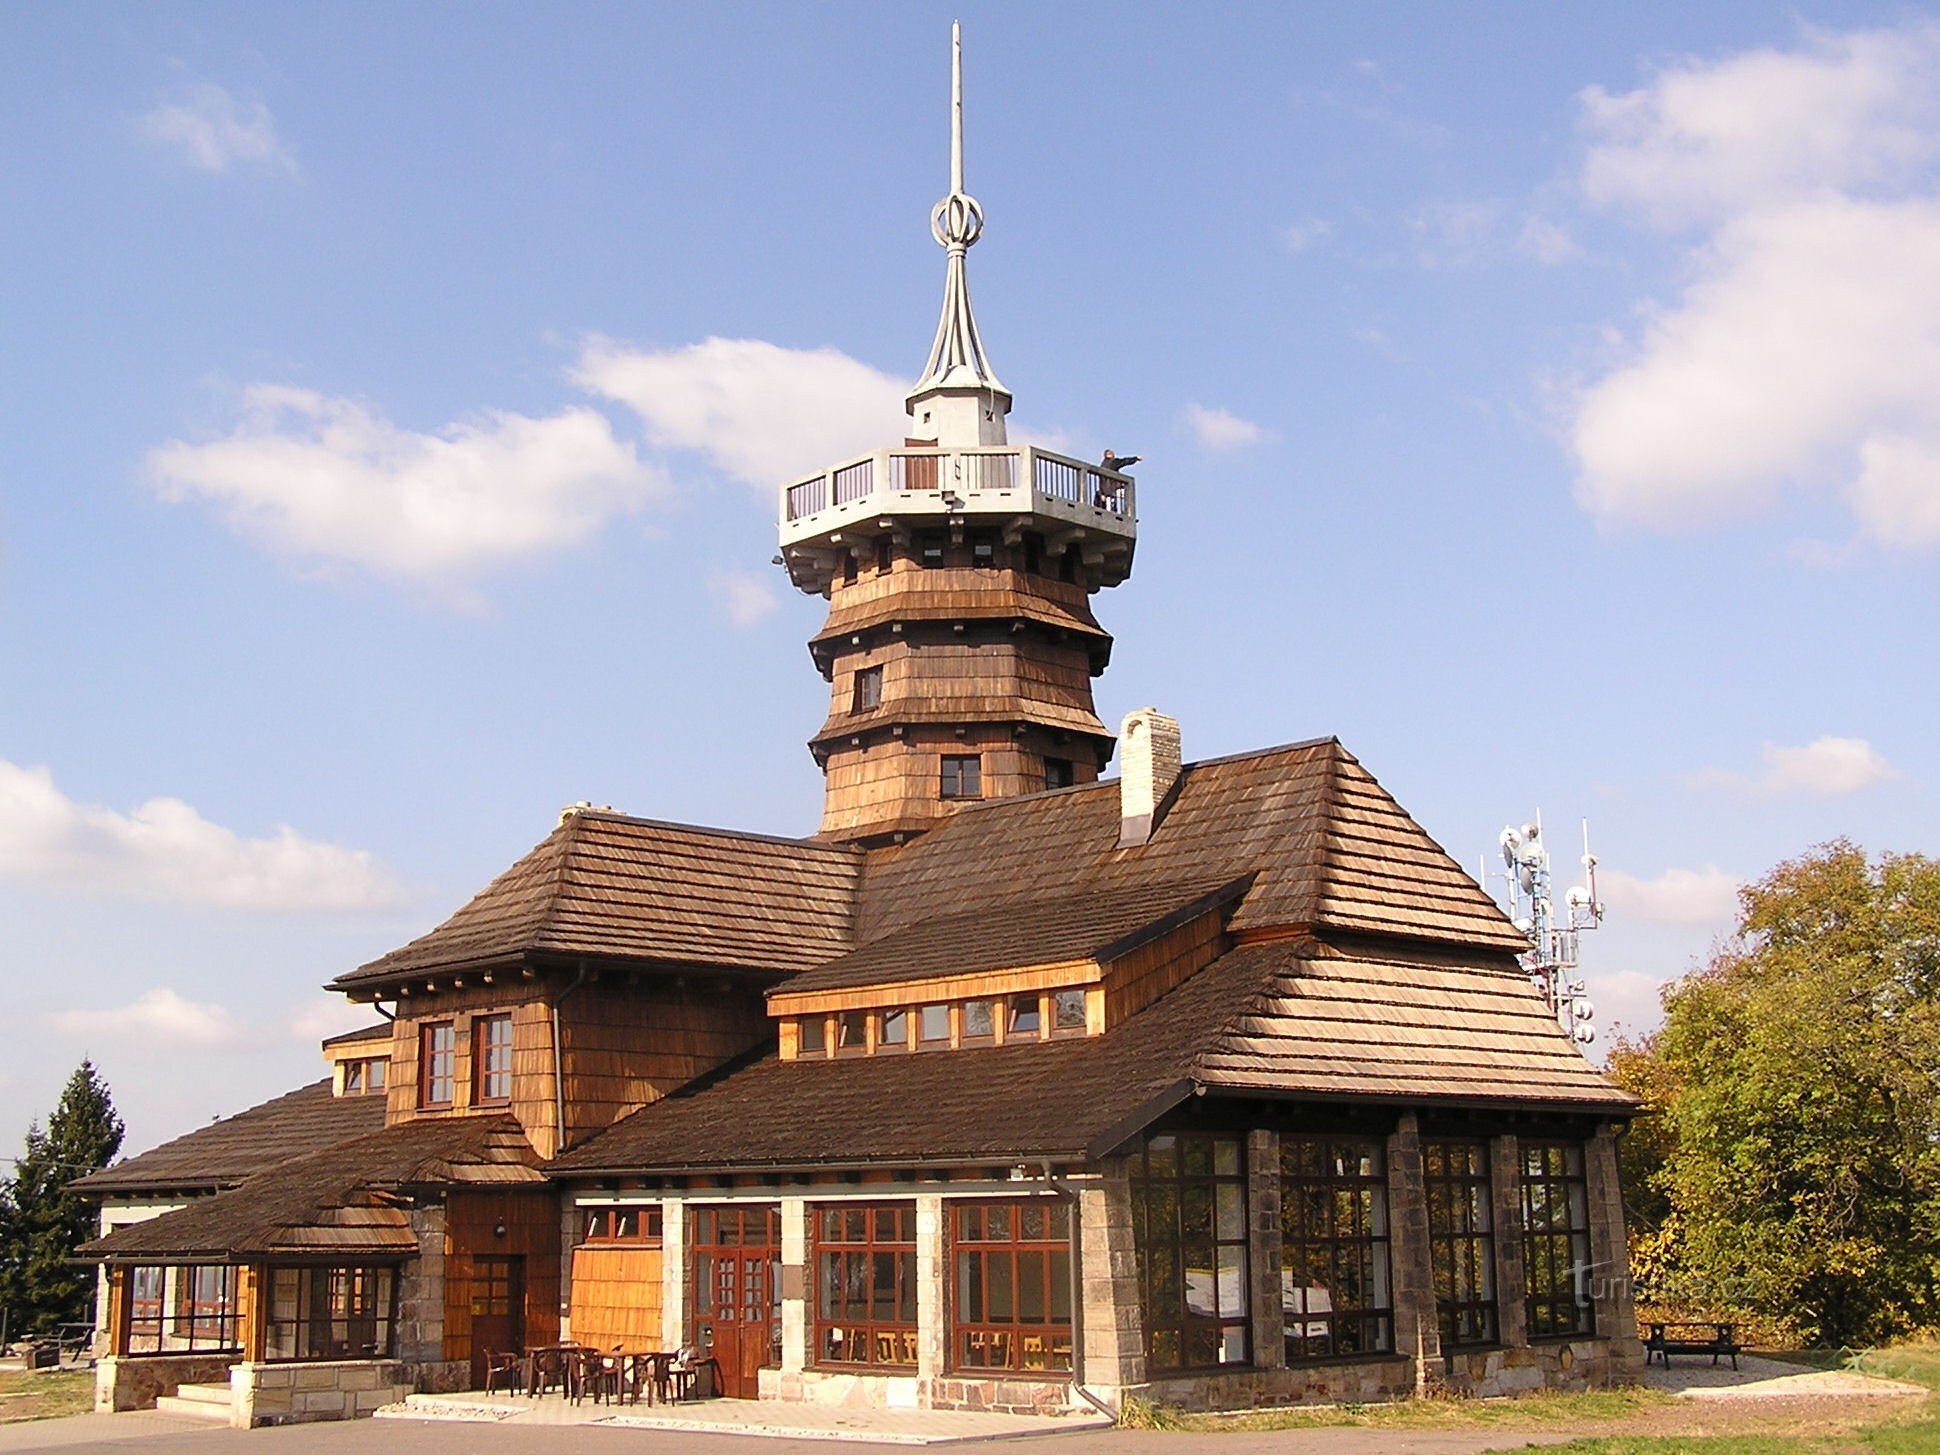 De toeristenhut van Jirásk in Dobrošov